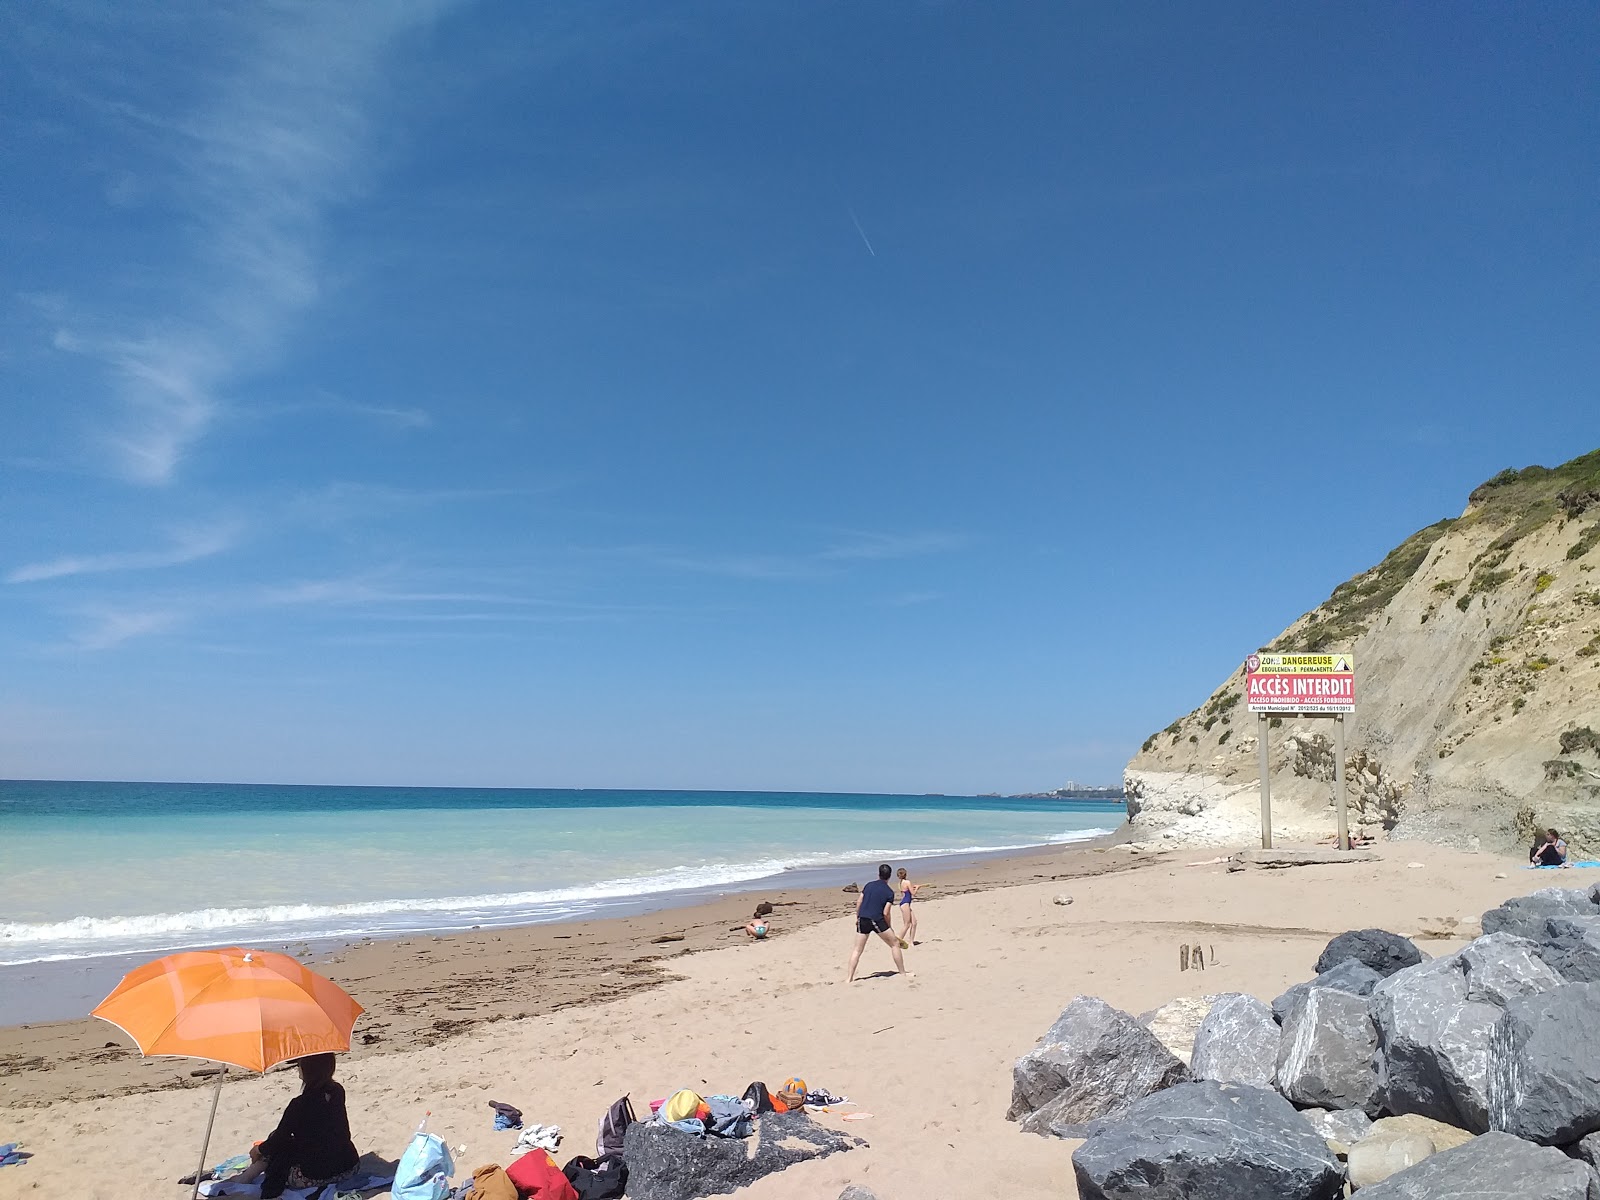 Bidart Plajı'in fotoğrafı parlak kum yüzey ile